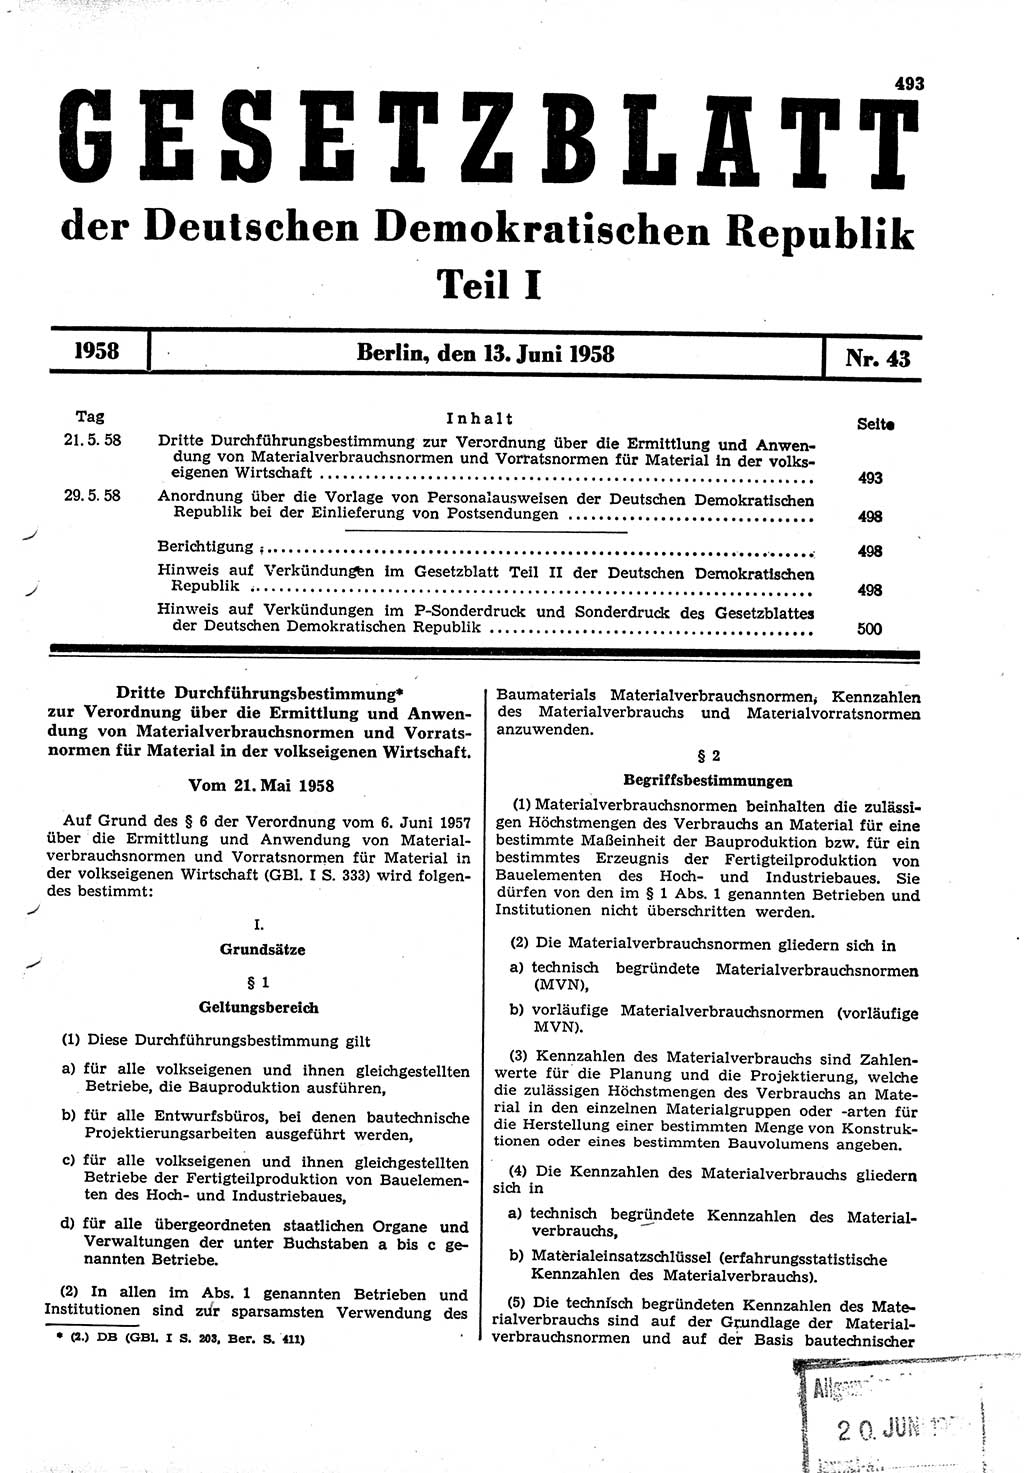 Gesetzblatt (GBl.) der Deutschen Demokratischen Republik (DDR) Teil Ⅰ 1958, Seite 493 (GBl. DDR Ⅰ 1958, S. 493)